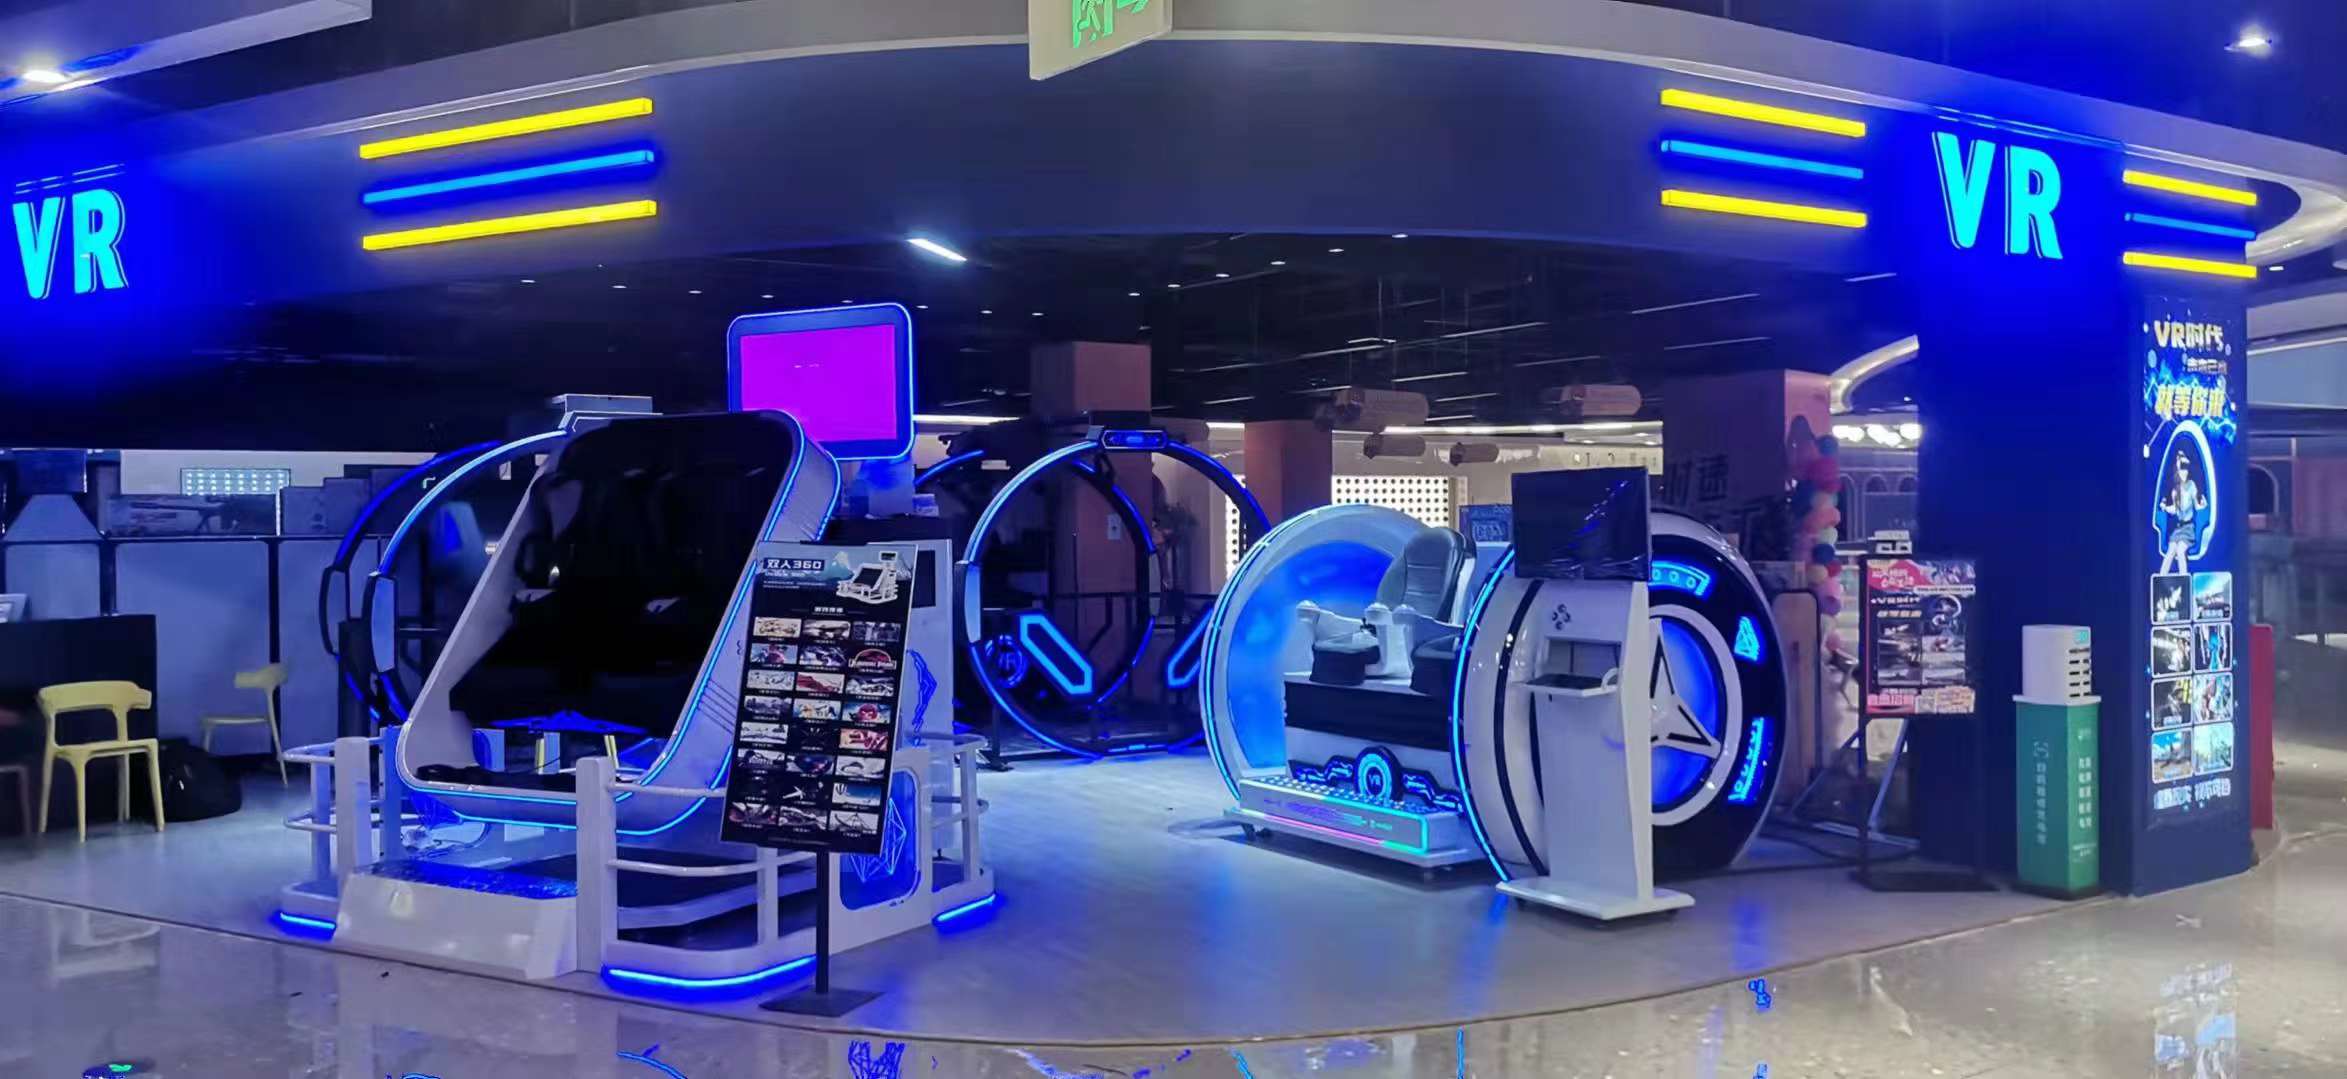 مقاعد مزدوجة تجارية 9D Egg VR Cinema كرسي حركة 9d كهربائي محاكاة الواقع الافتراضي